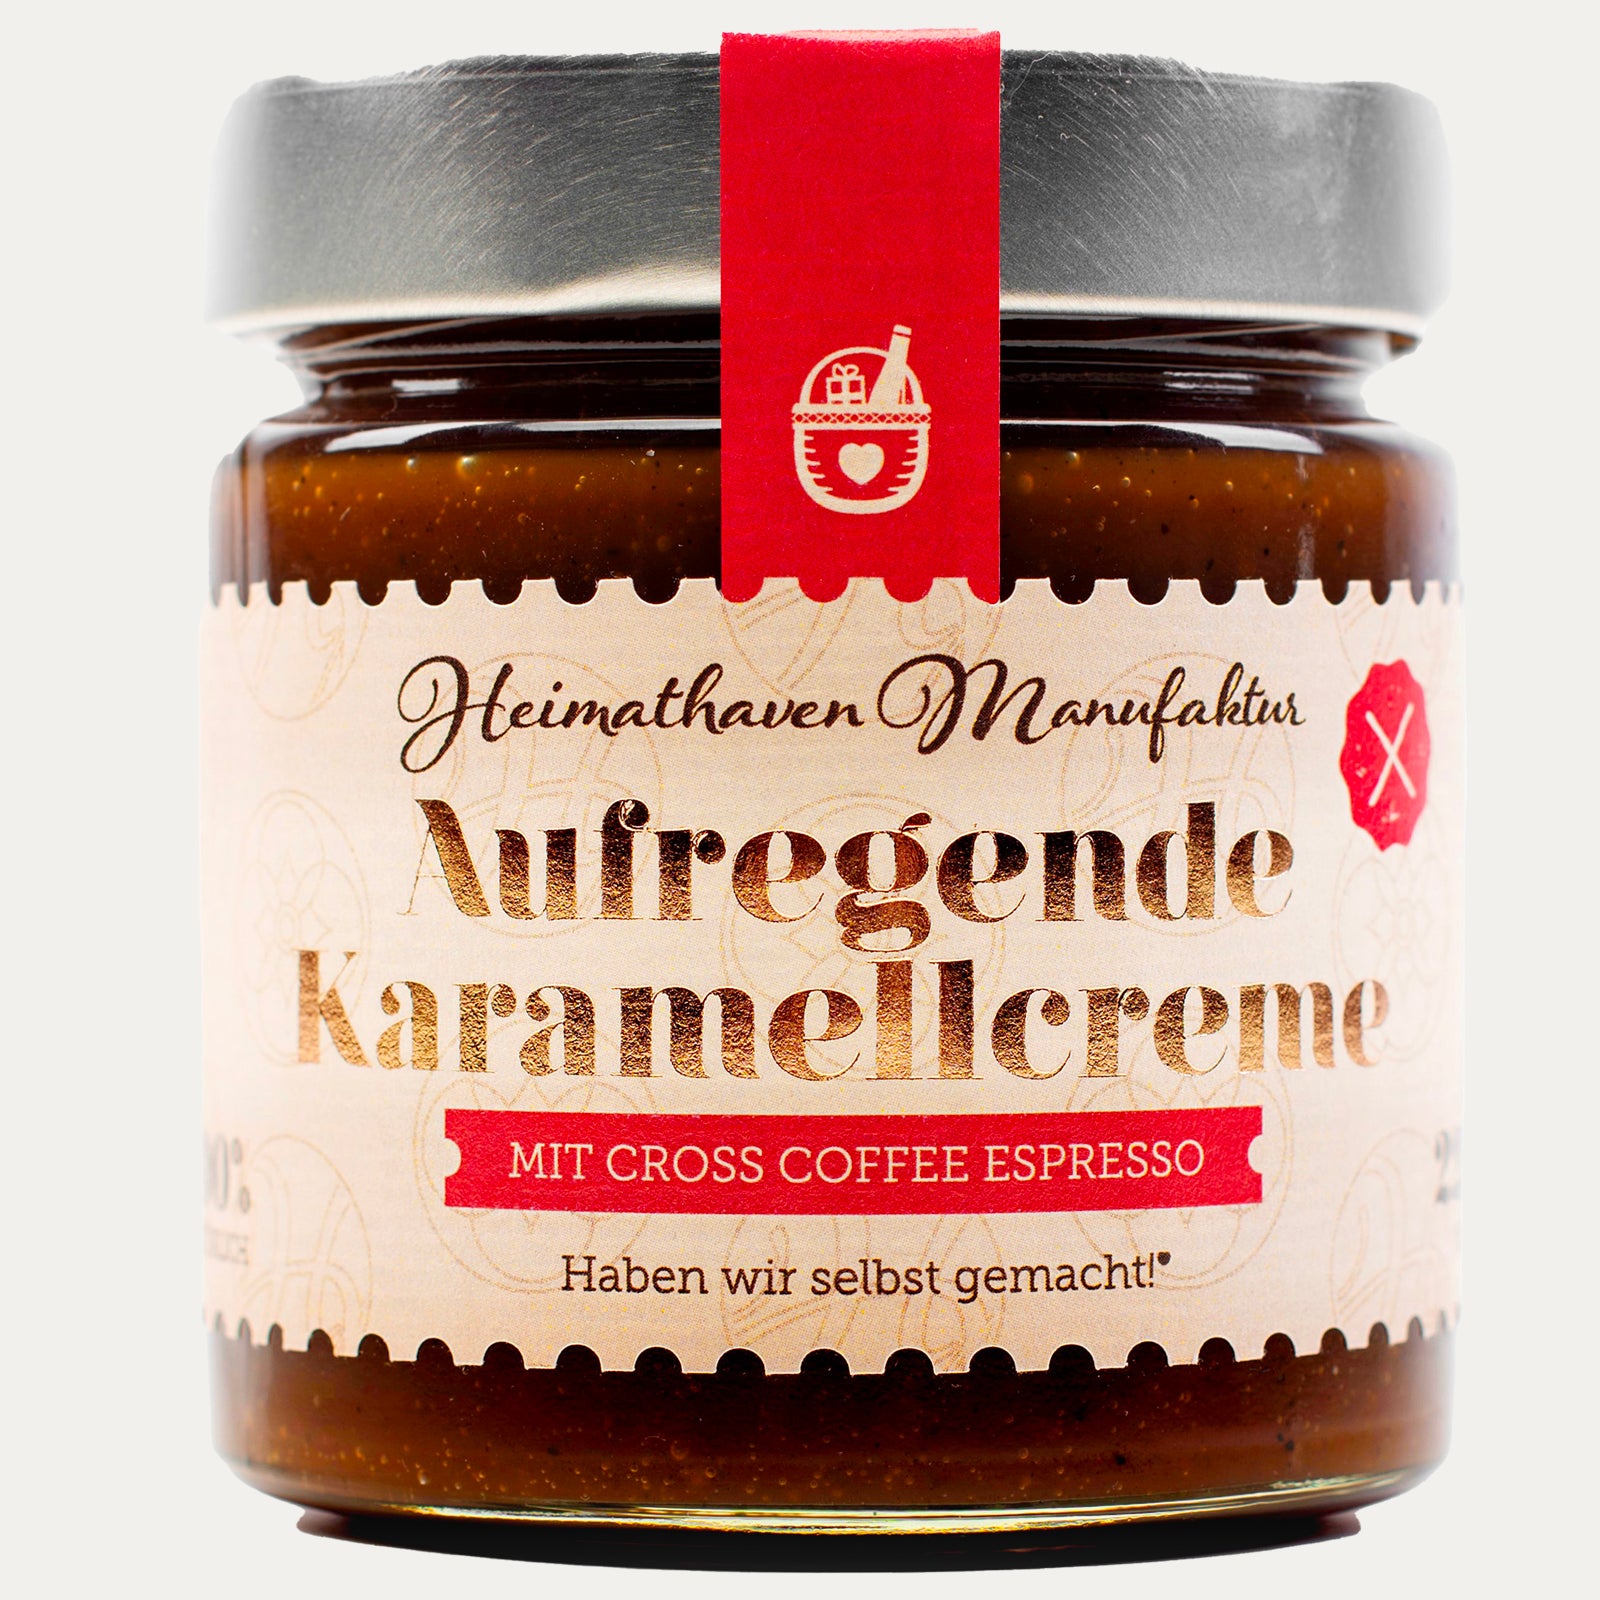 Aufregende Karamellcreme - mit Cross Coffee Espresso – in zwei Größen